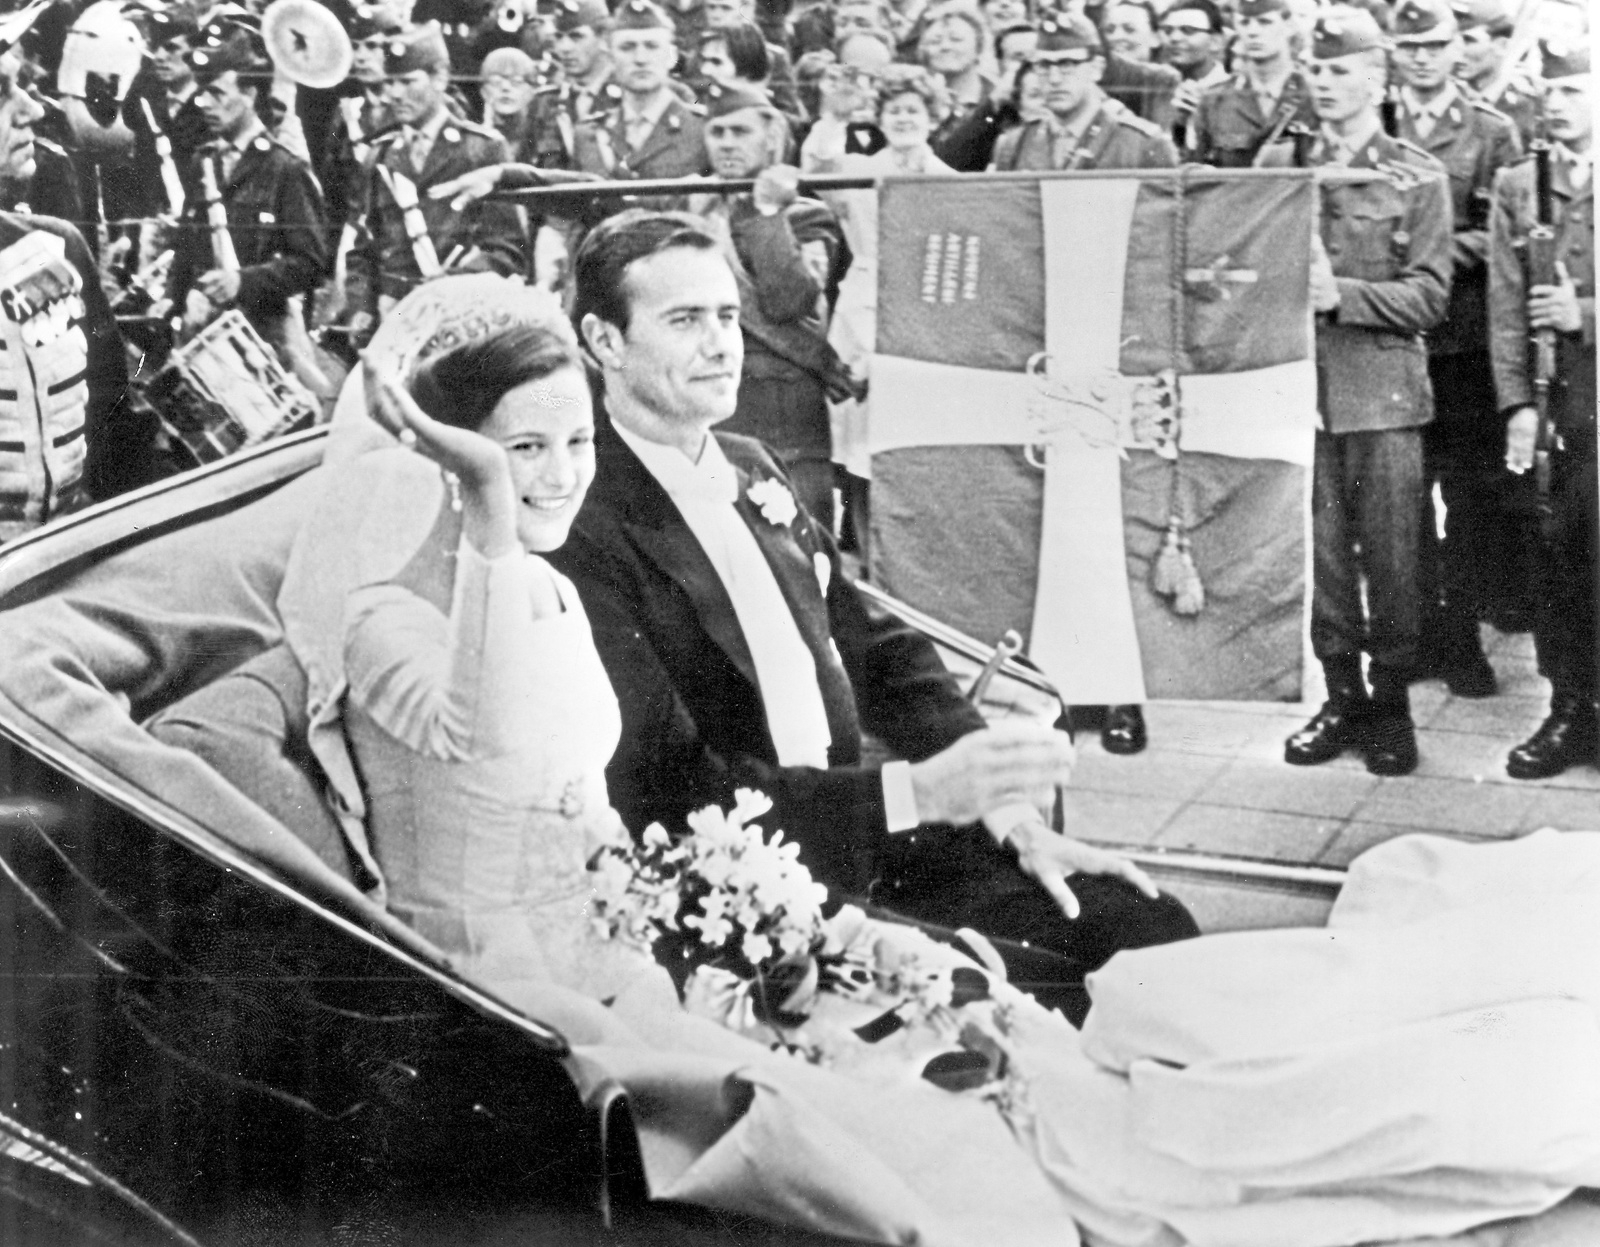 Den nygifta kronprinsessan Margrethe av Danmark med maken prins Henrik vinkar till åskådarna längs kortegevägen mellan Holmens kyrka och Fredensborg i Köpenhamn, Danmark, strax efter vigselceremonin 10:e juni 1967.
Foto: AP/TT